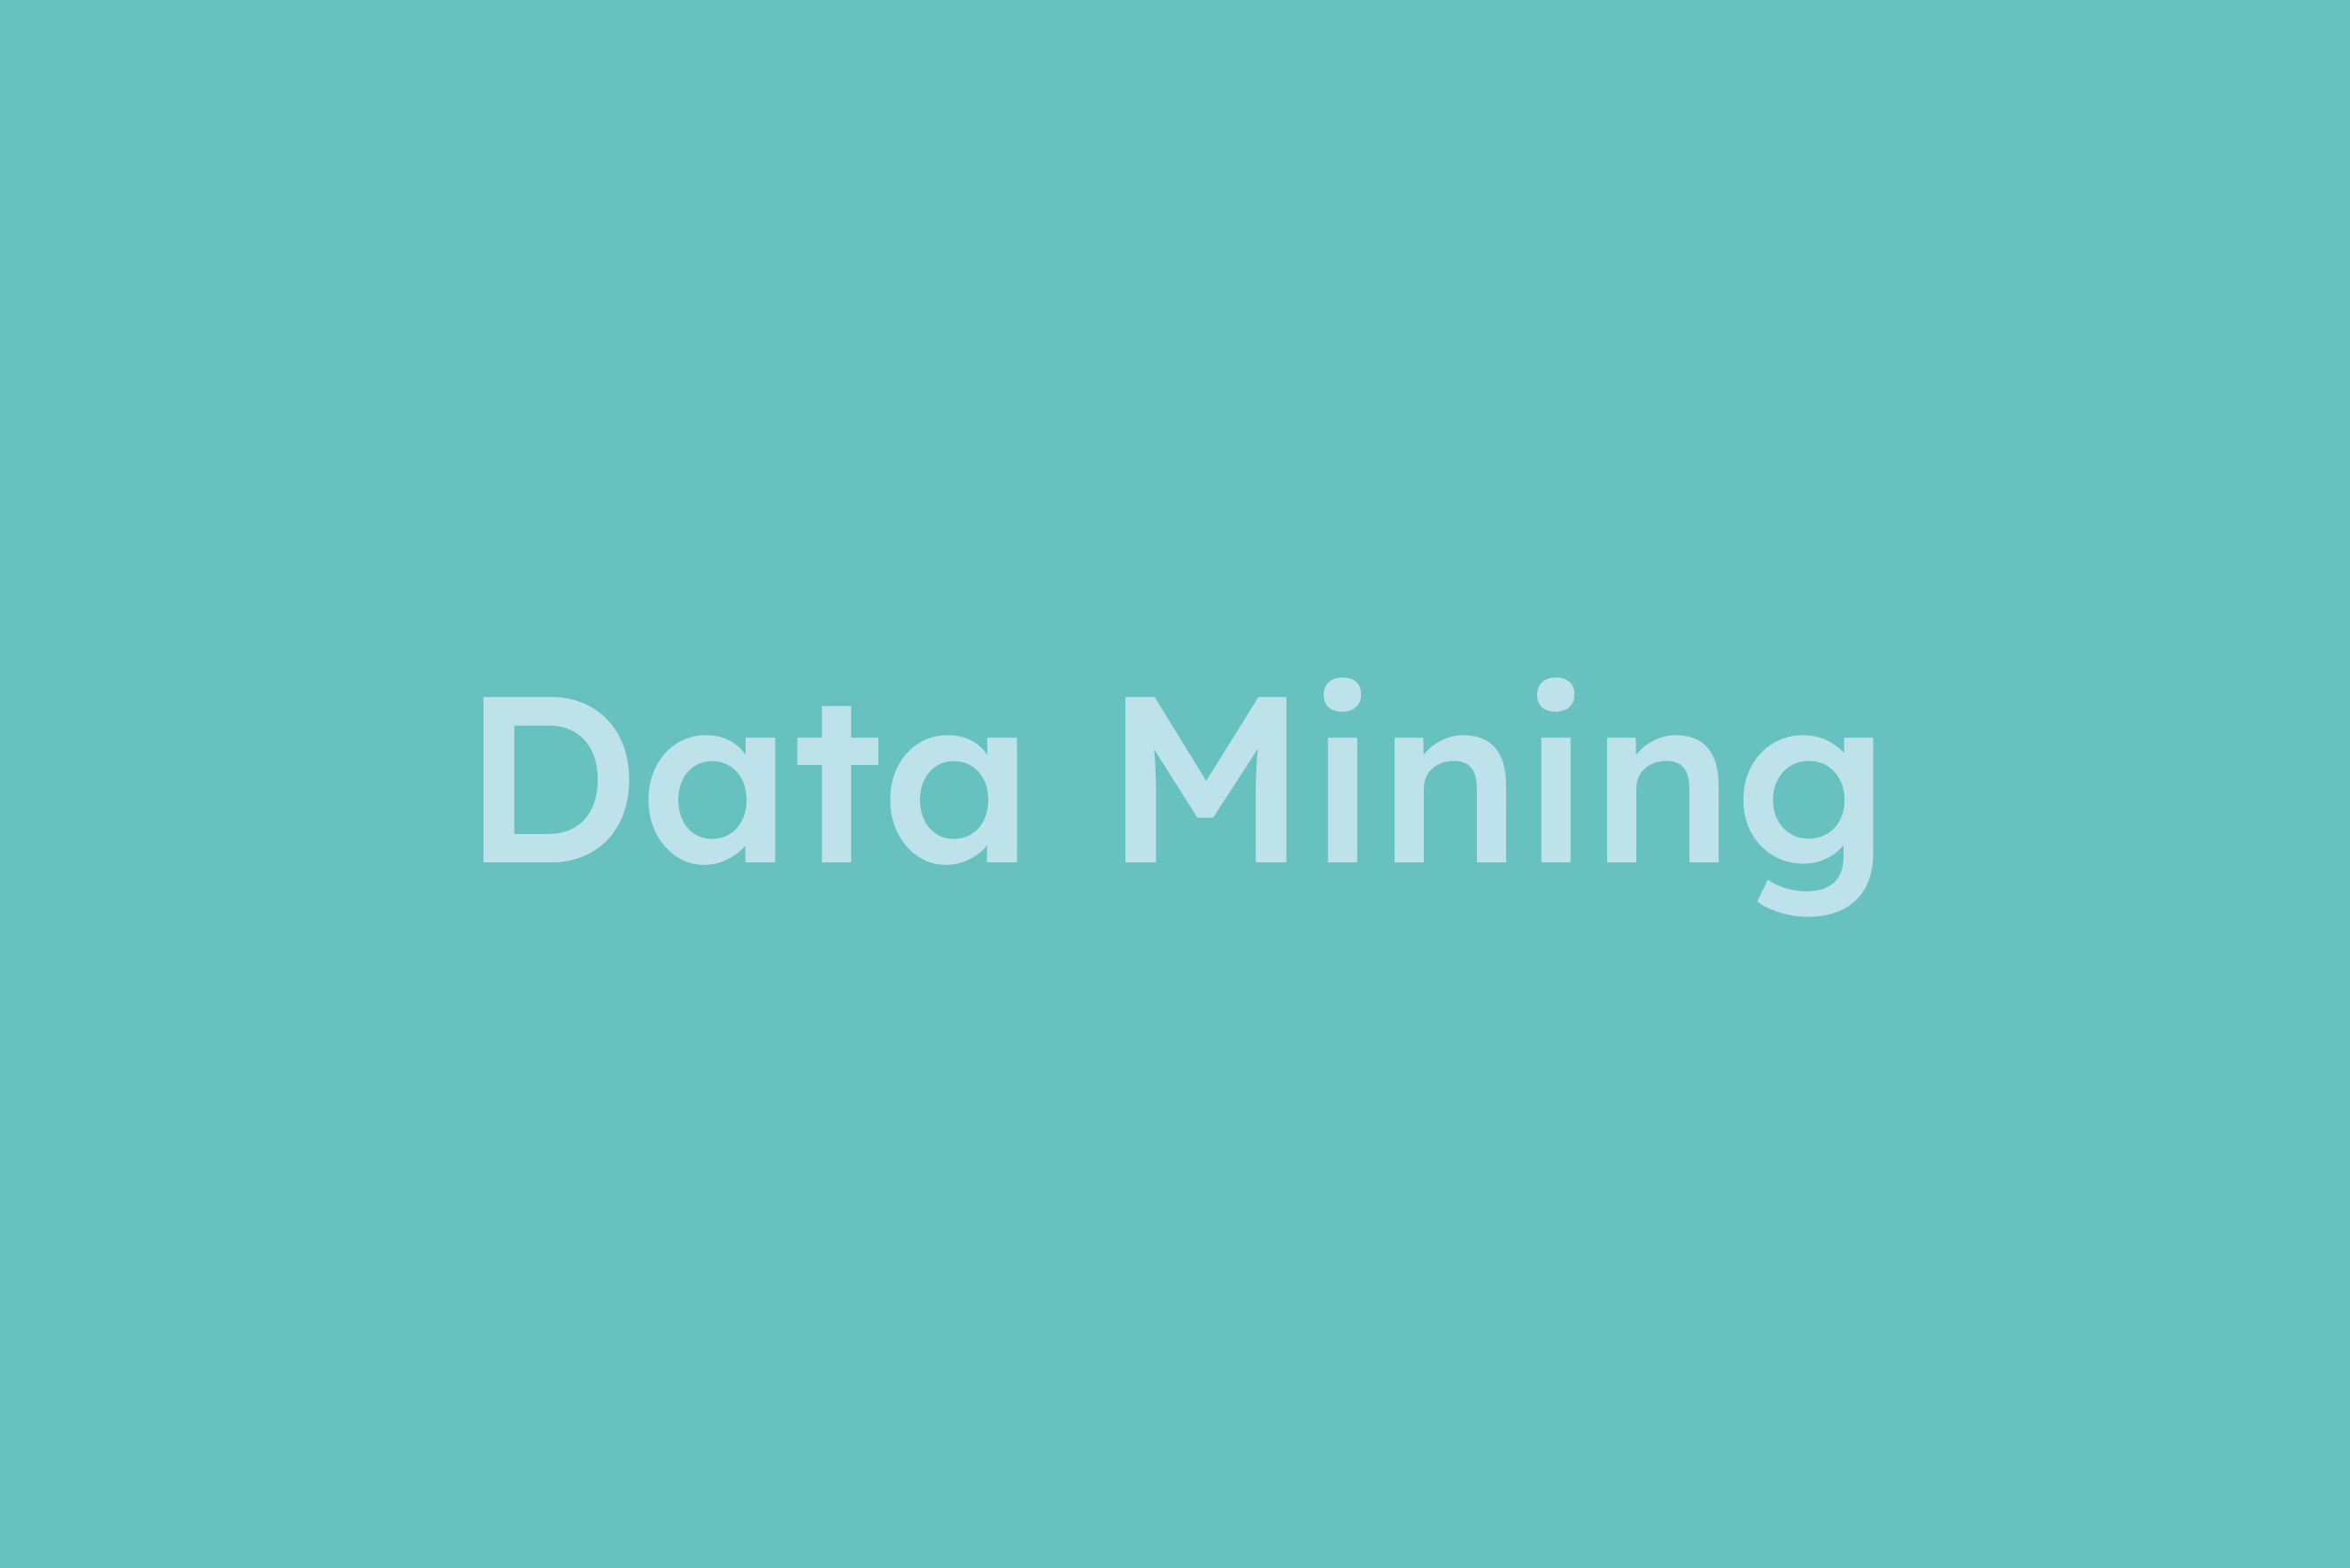 Data Mining erklärt im Glossar von Campaign